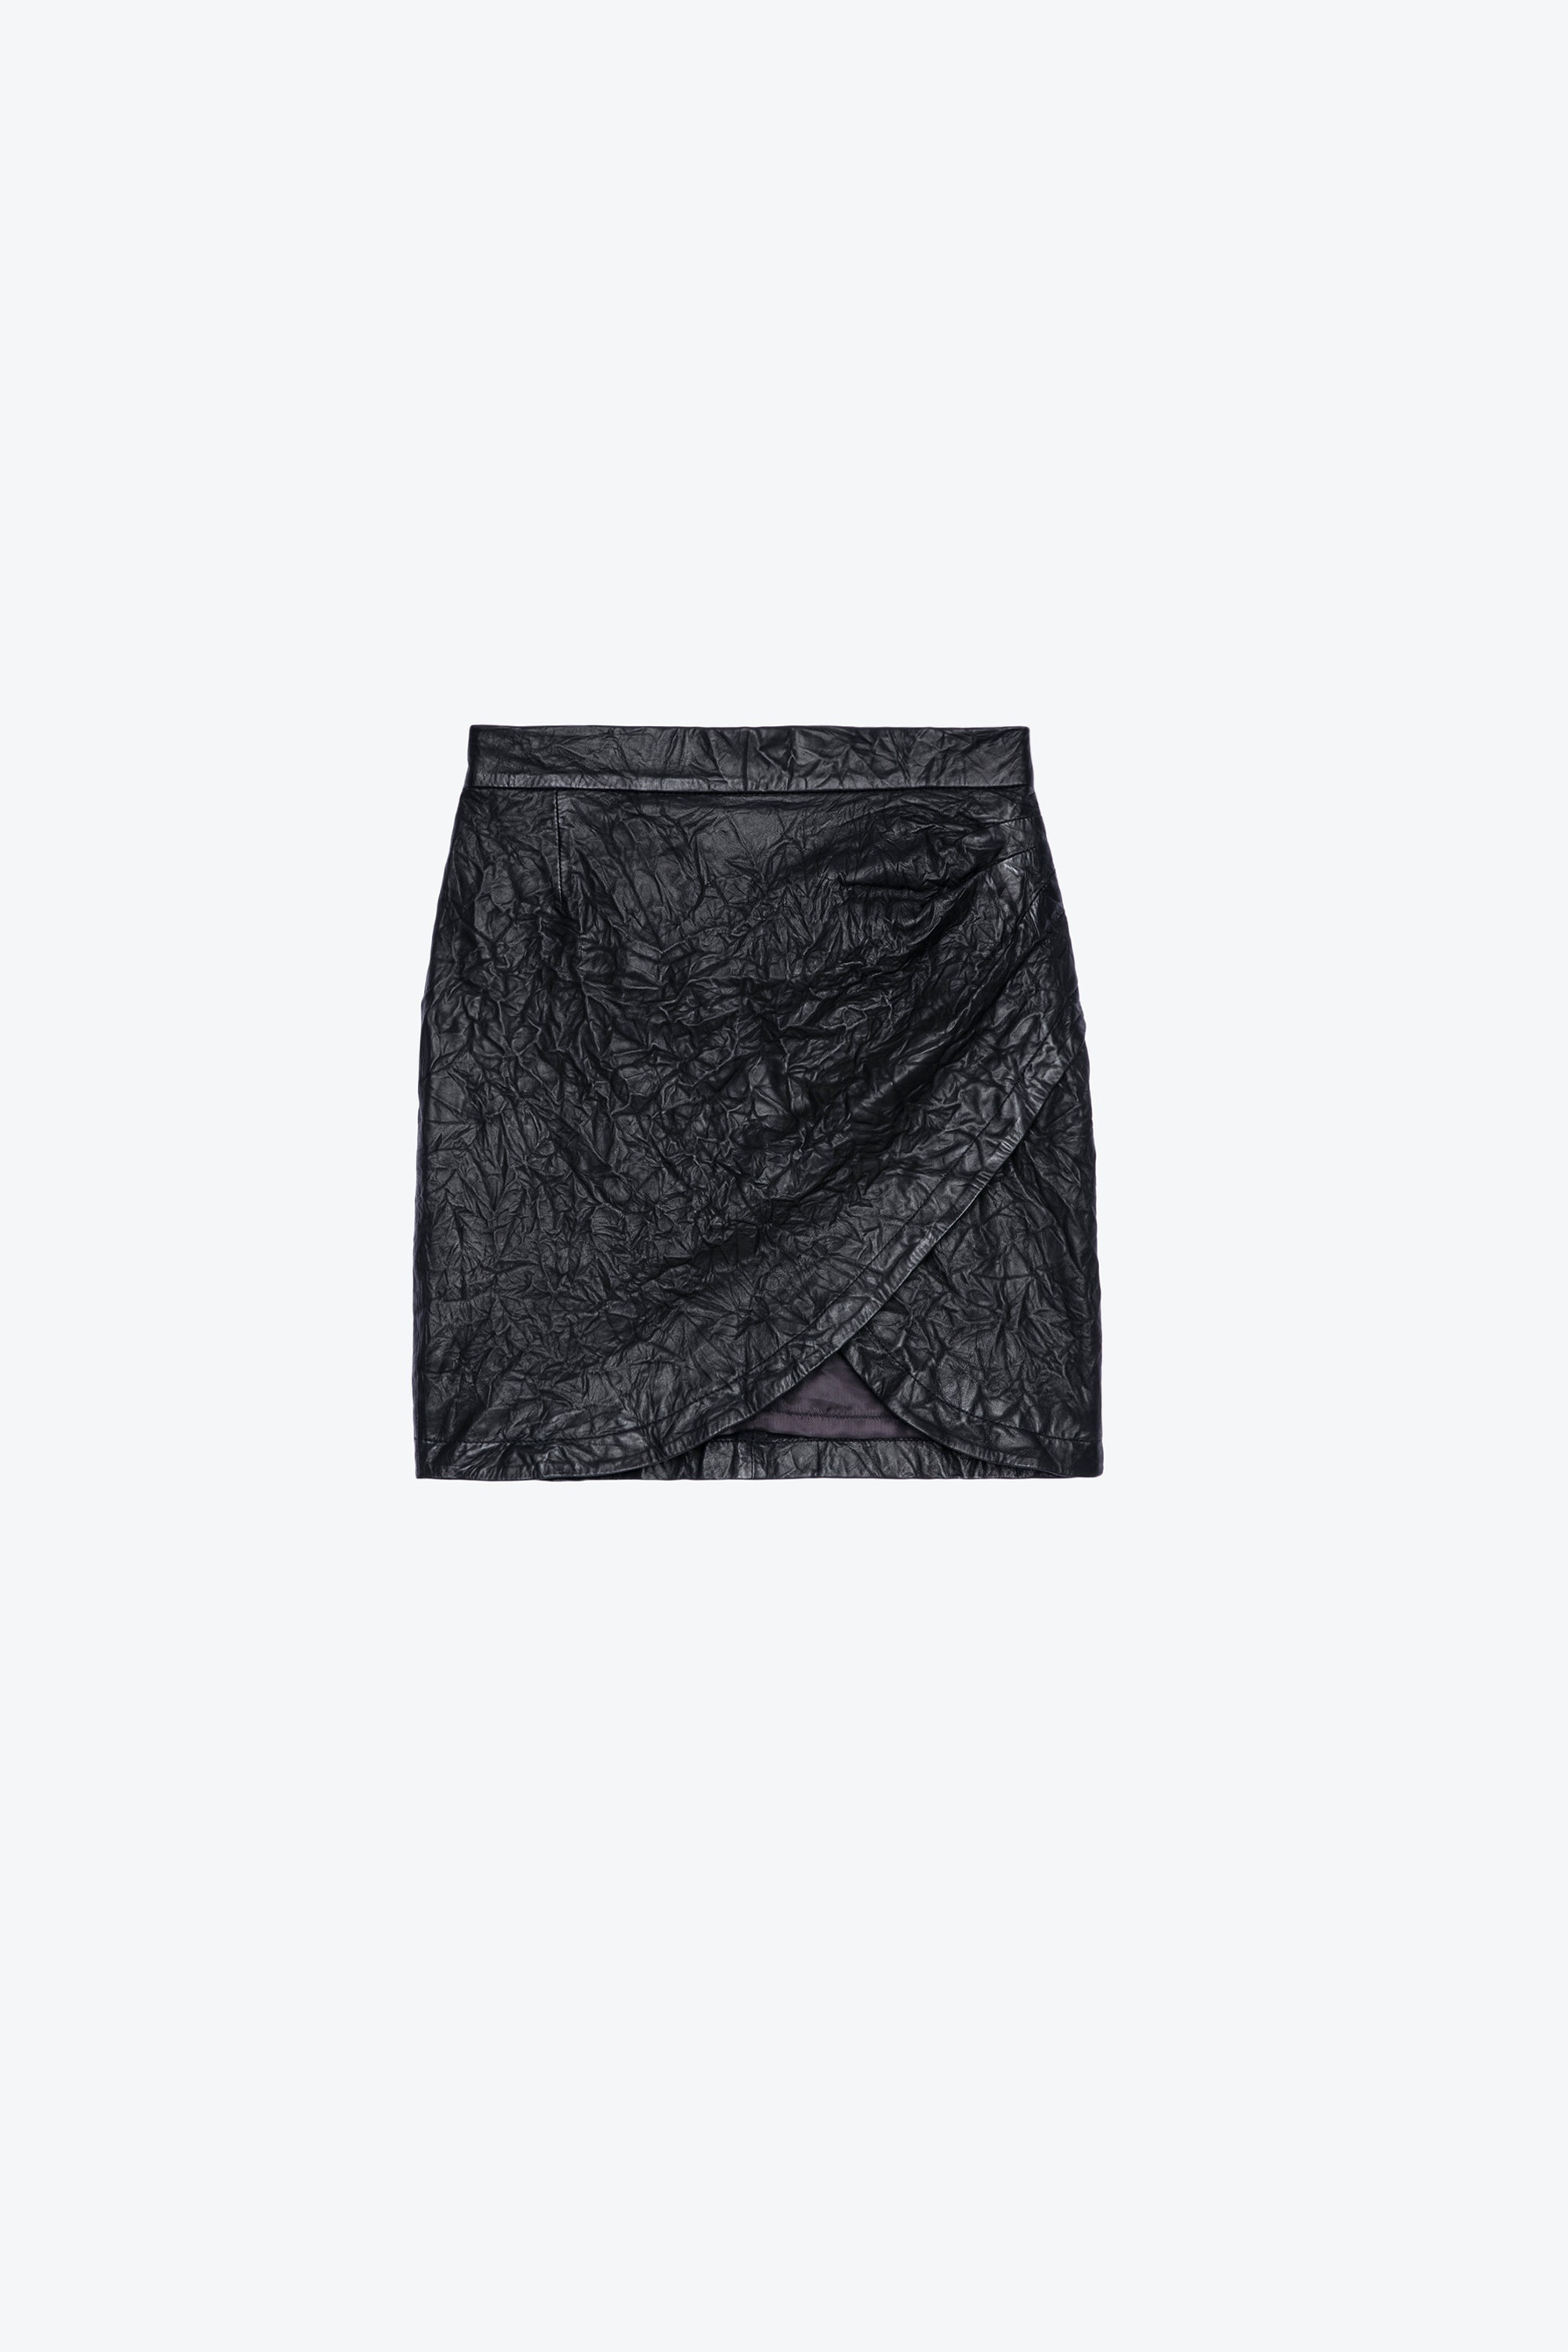 Julipe Crinkled Leather Skirt - 1